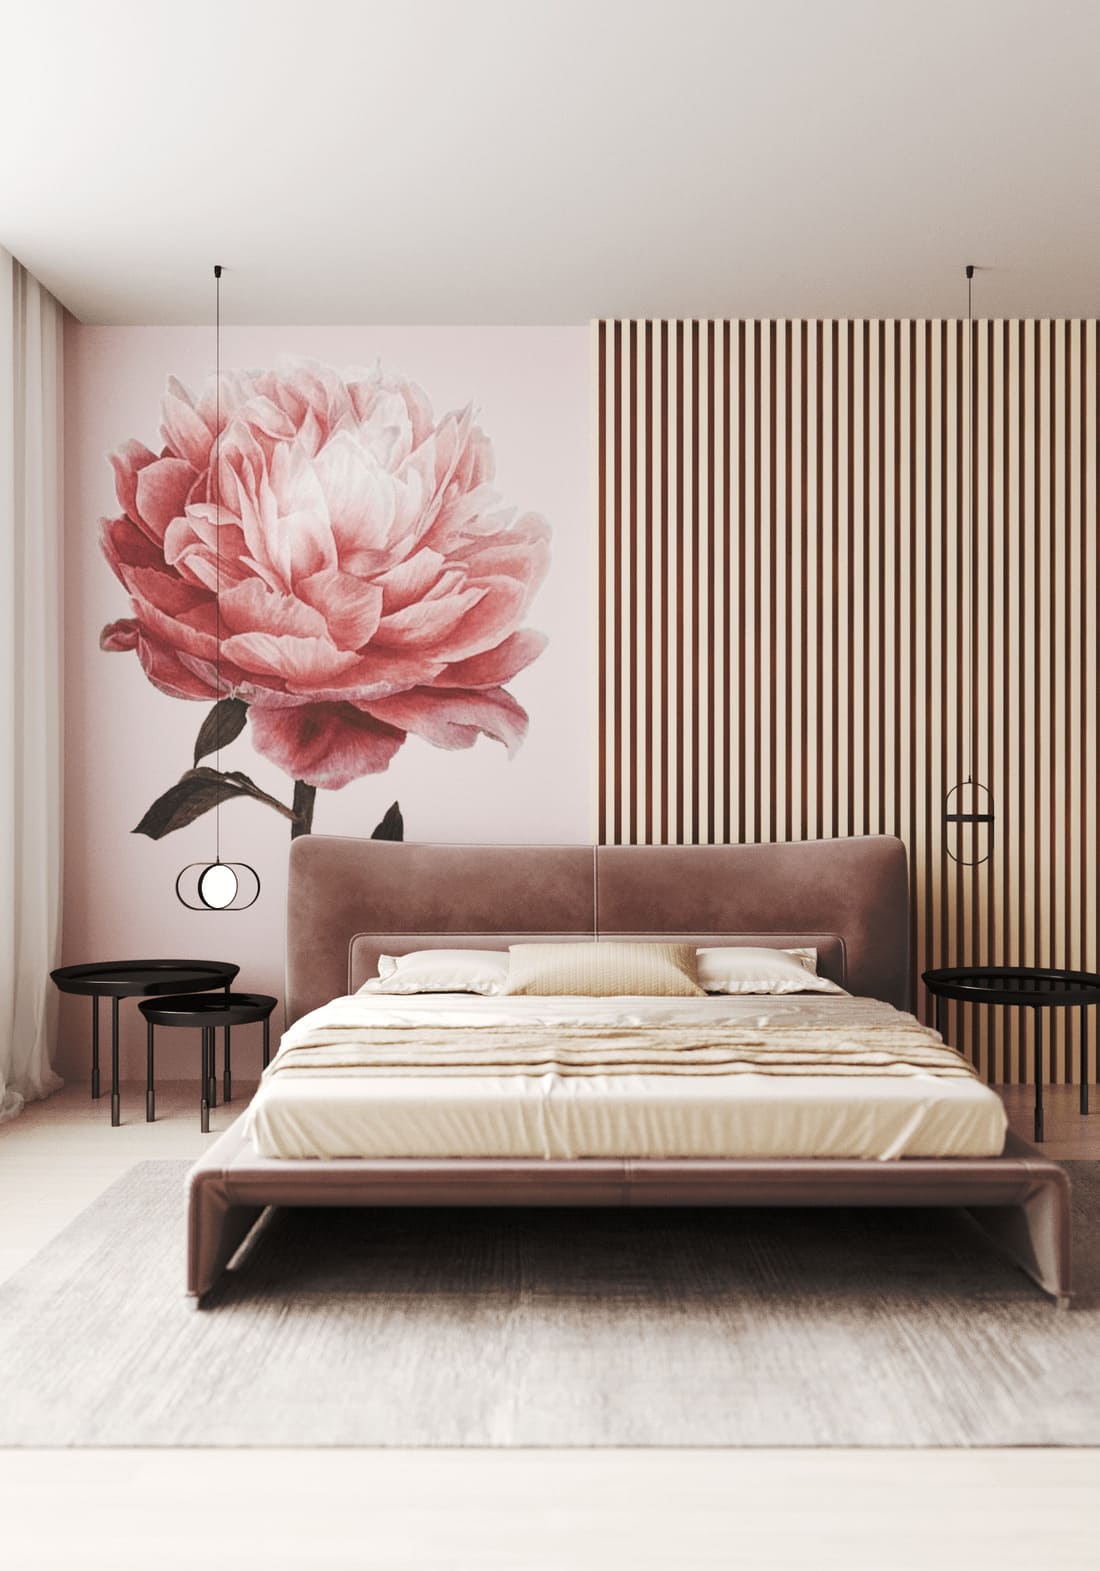 Trang trí phòng ngủ cho vợ chồng với màu sắc lãng mạn.